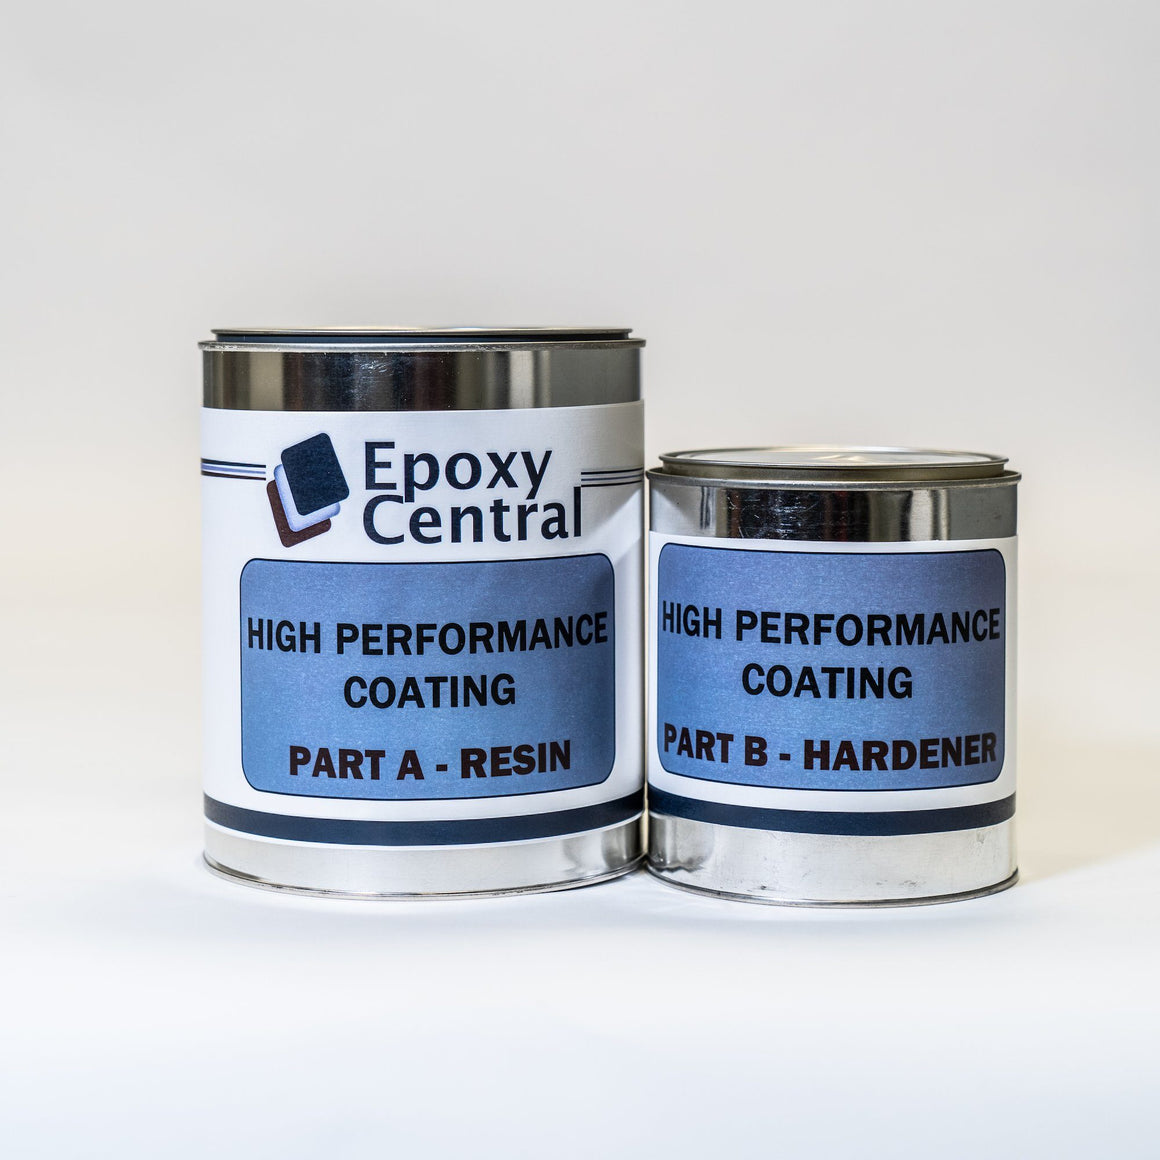 Base Coat - 93% Solids Medium Build Epoxy Coating